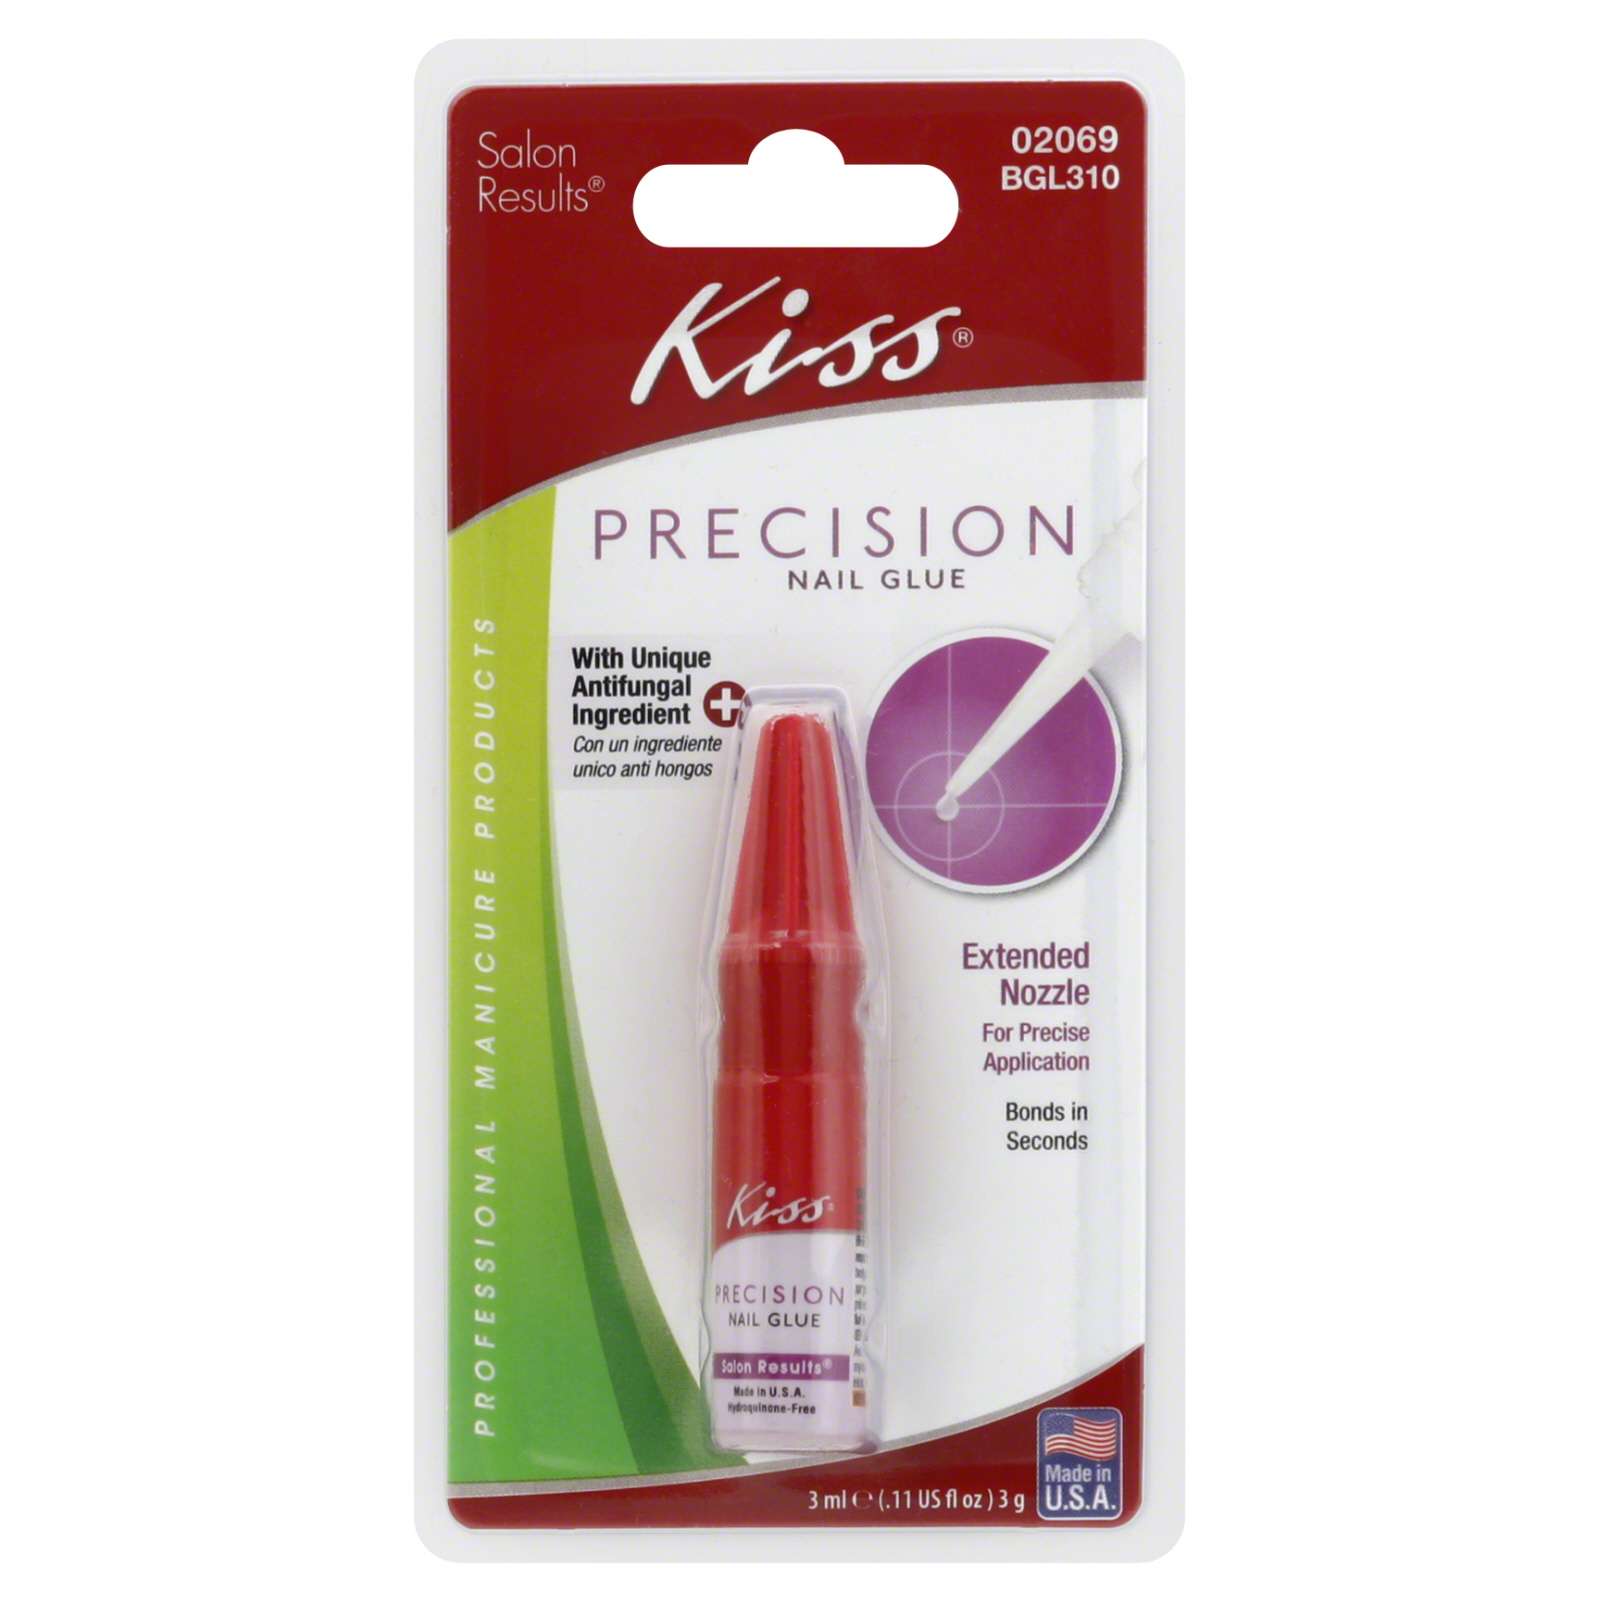 Kiss Nail Glue, Precision, 0.11 fl oz (3 ml) 3 g